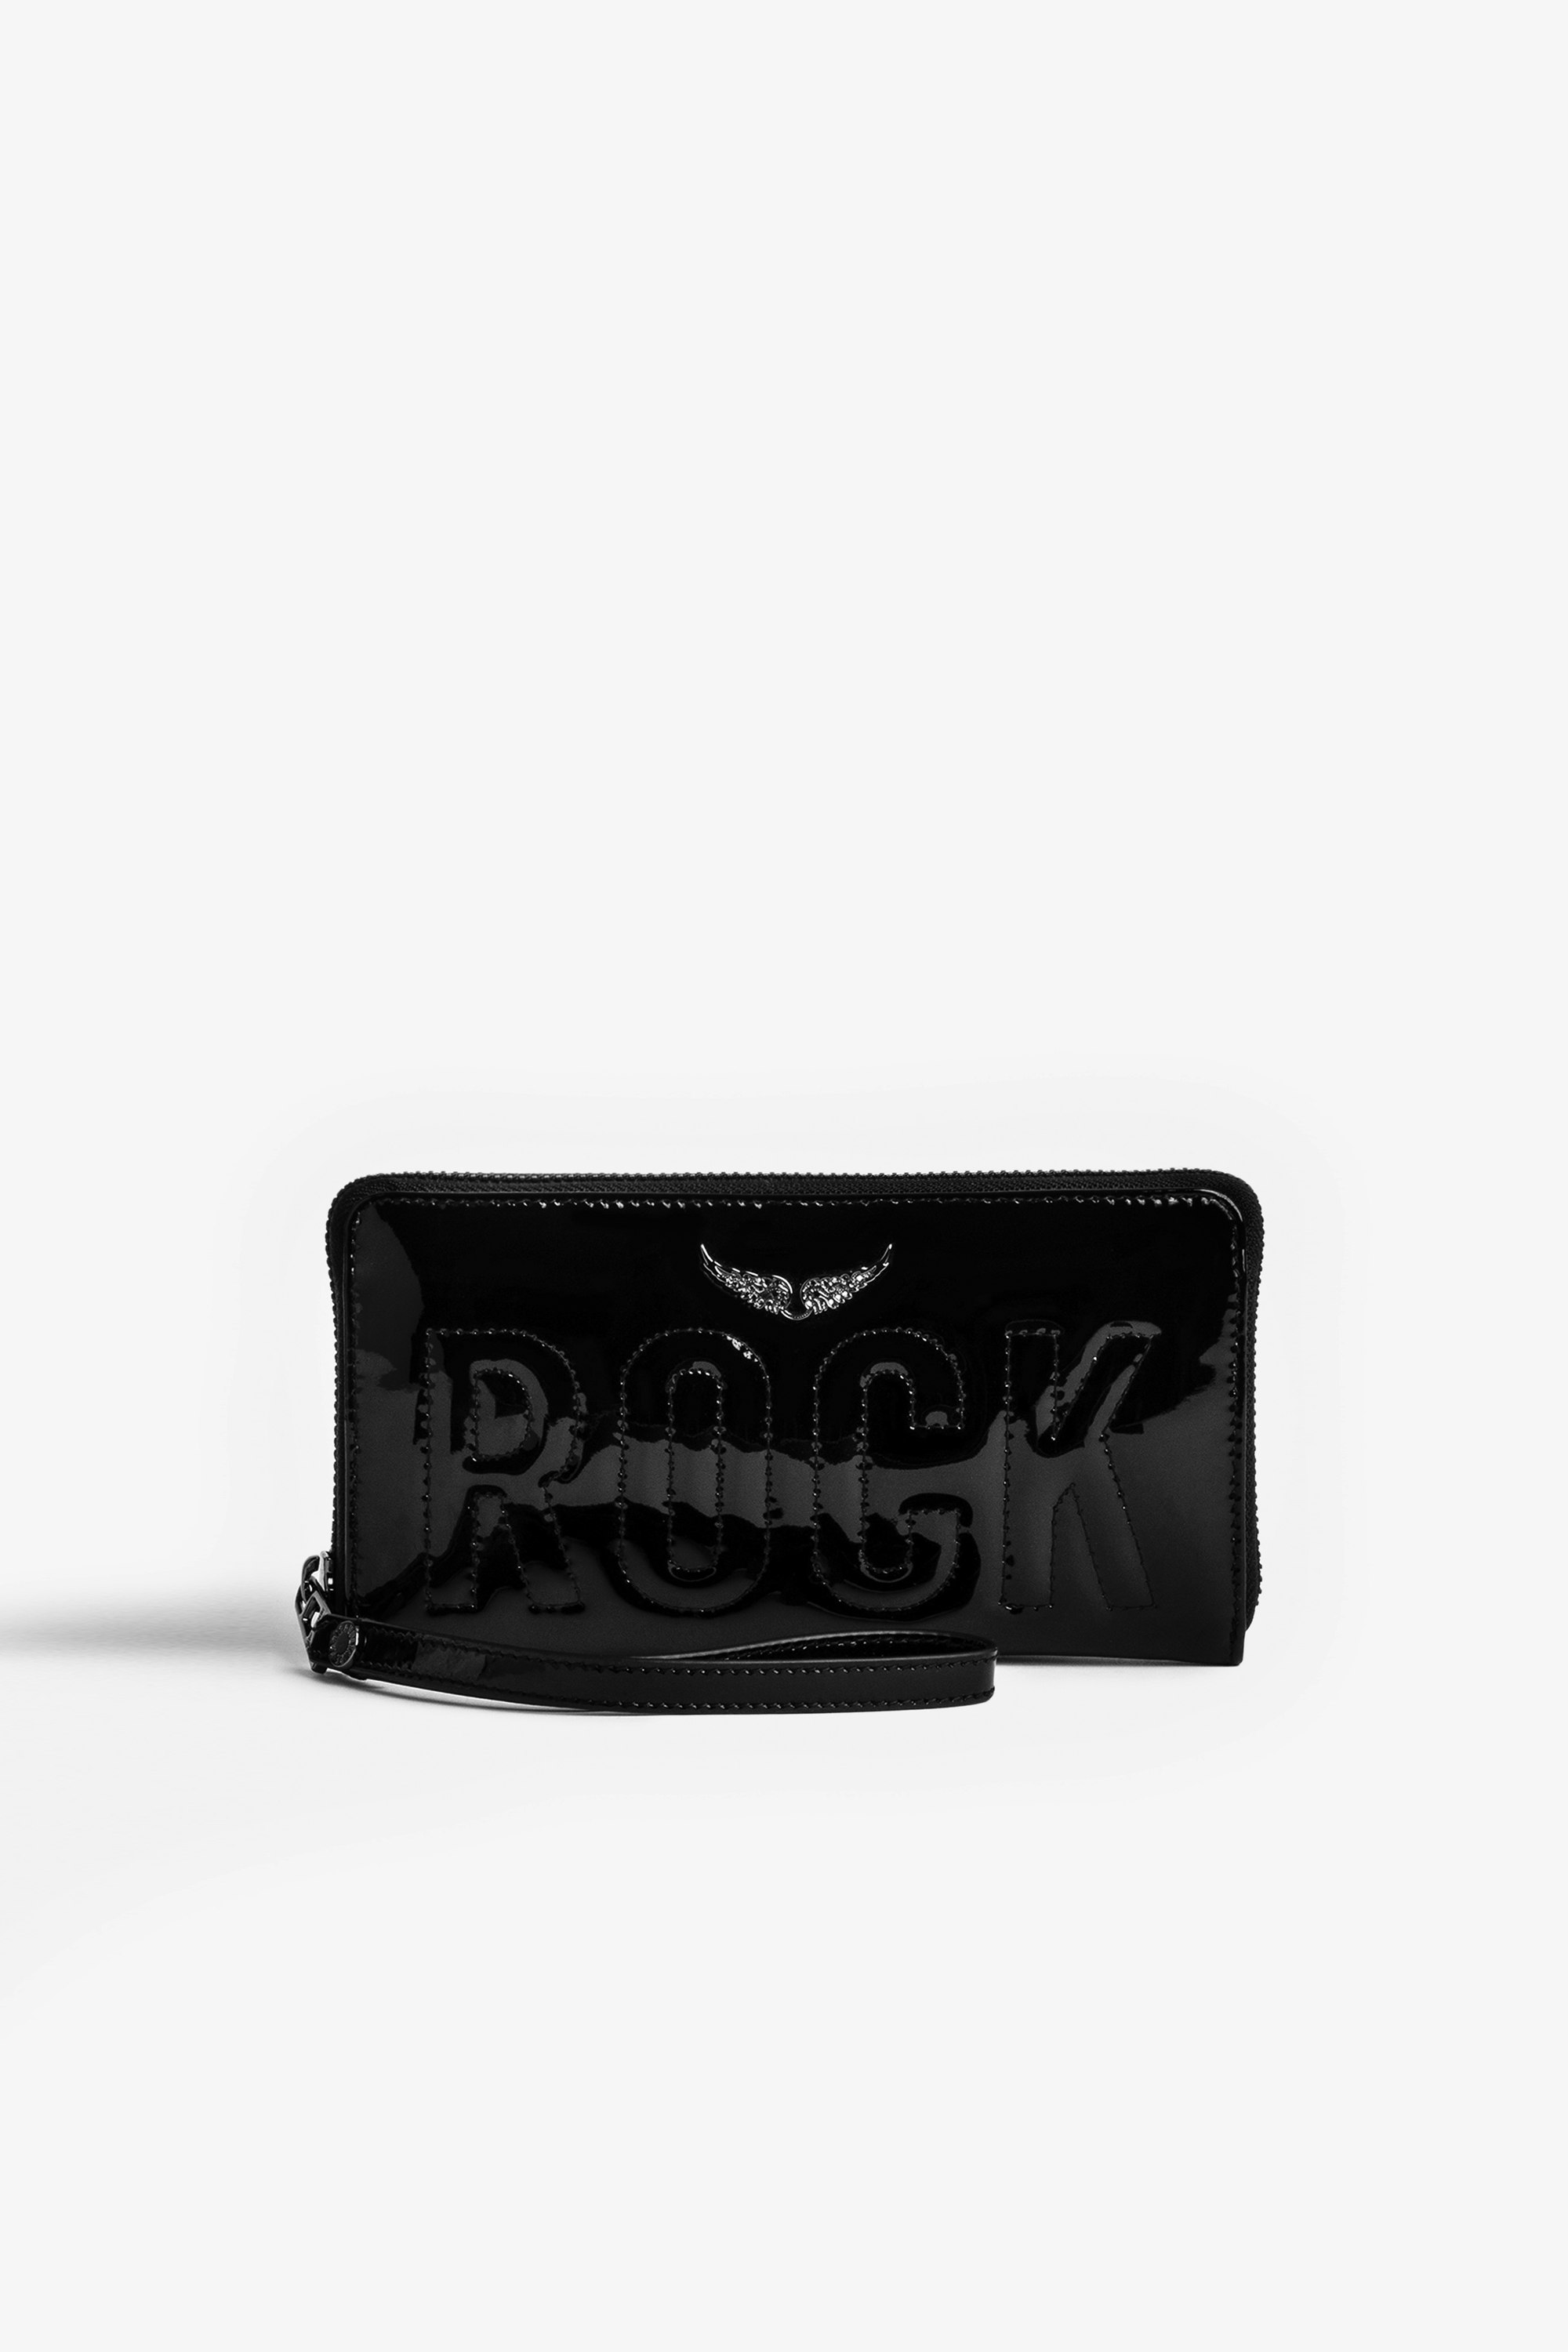 Brieftasche Compagnon Damen-Portemonnaie Compagnon aus glänzendem schwarzen Leder mit aufgestepptem Schriftzug „Rock“ und einem kristallbesetzten Flügel-Charm